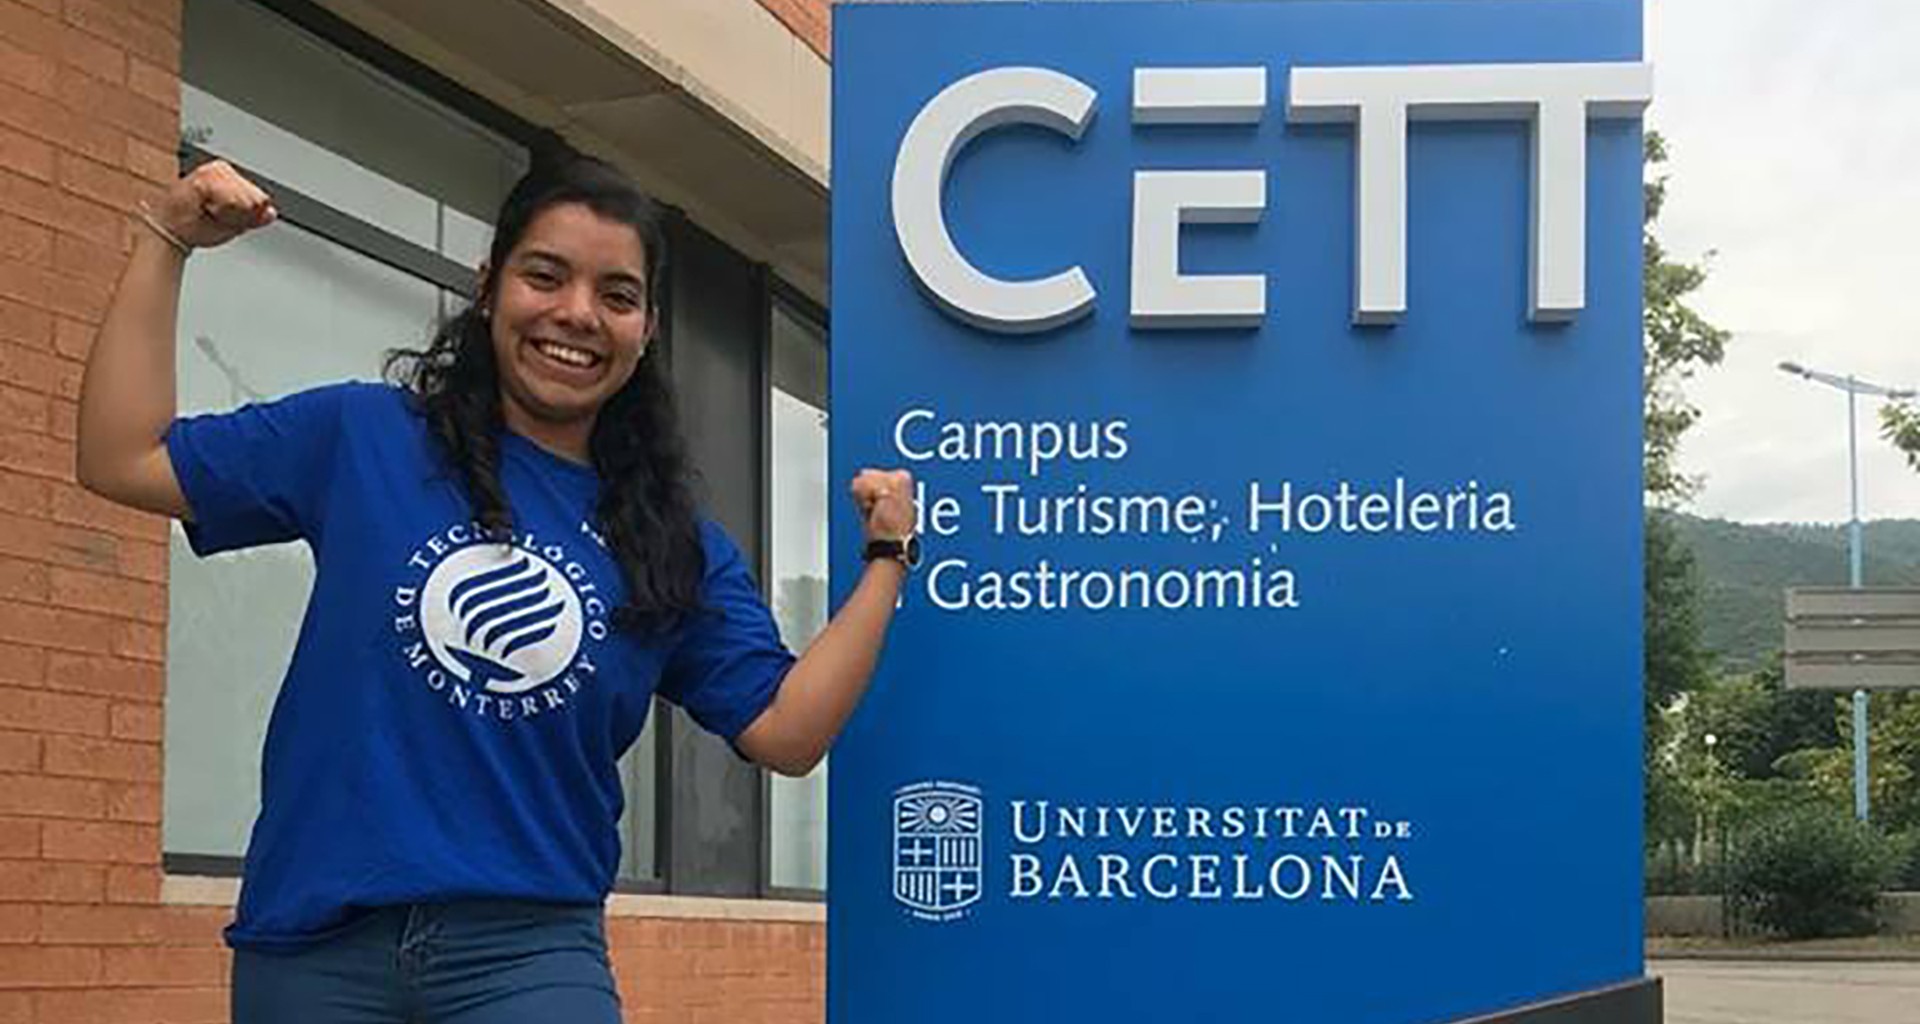 Paola Cerecedo Cruz, alumna de sexto semestre de Ingeniería en Industrias Alimentarias